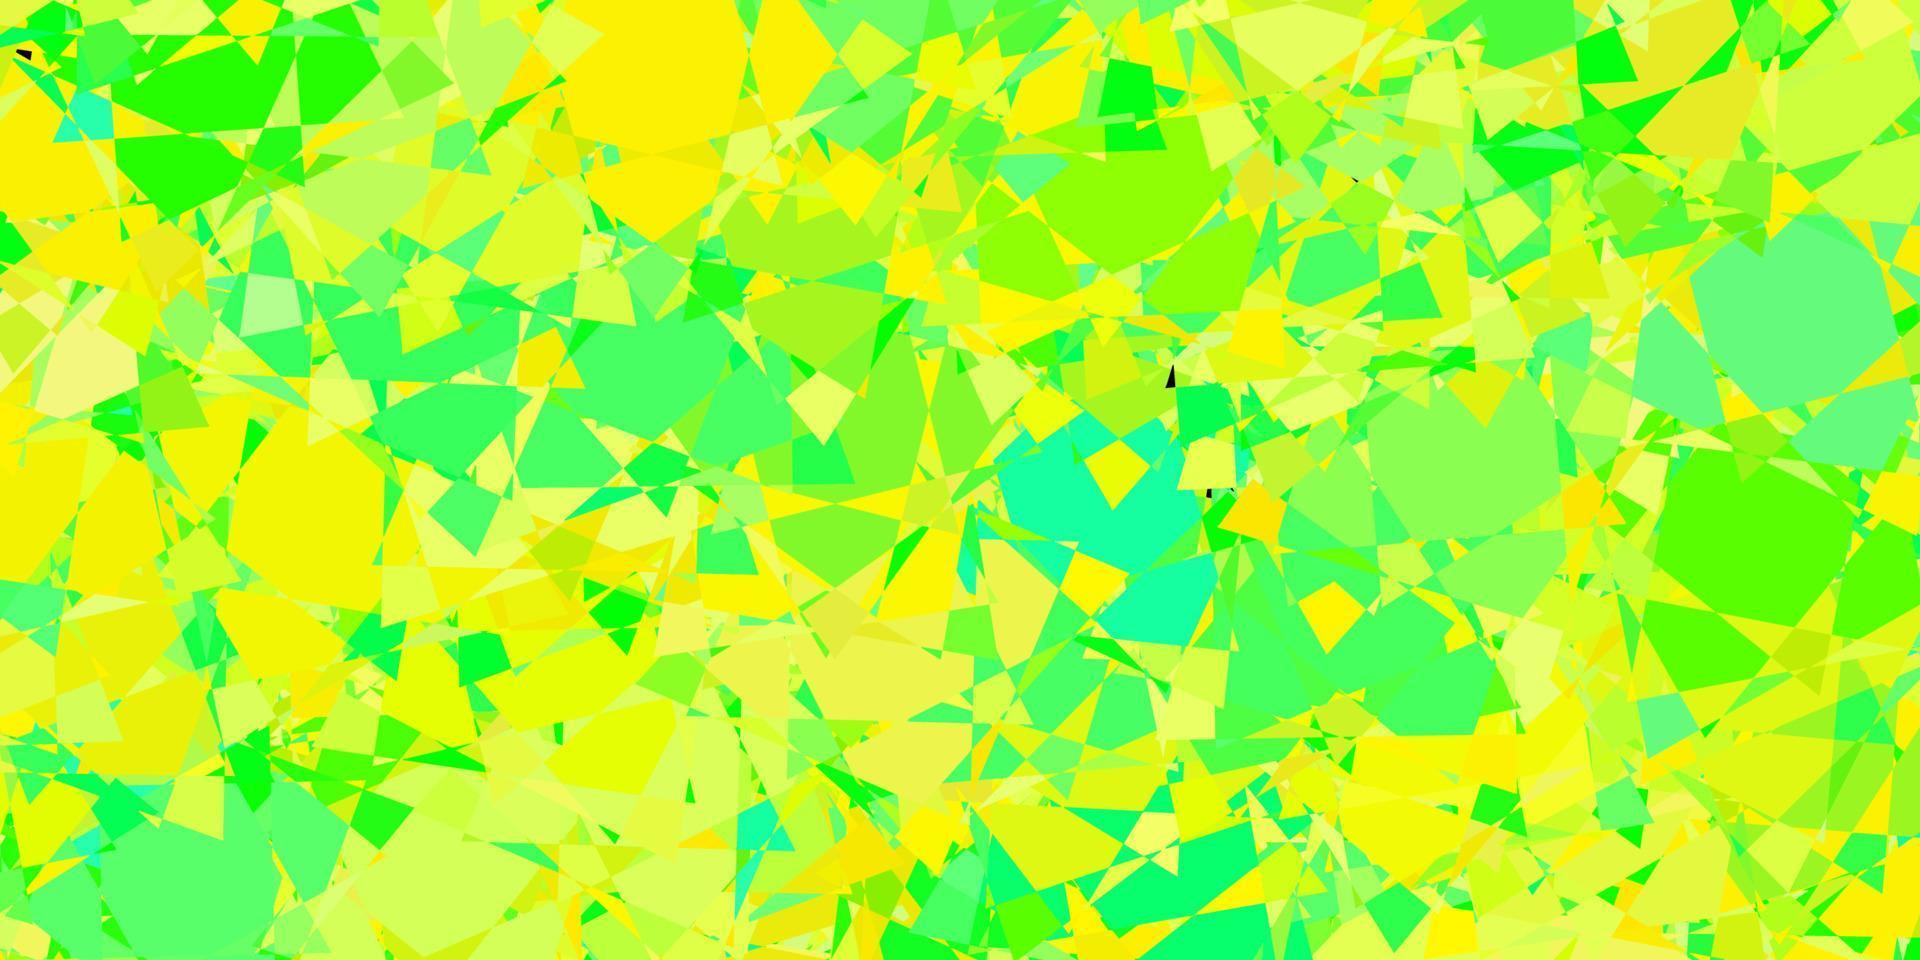 padrão de vetor verde e amarelo escuro com formas poligonais.